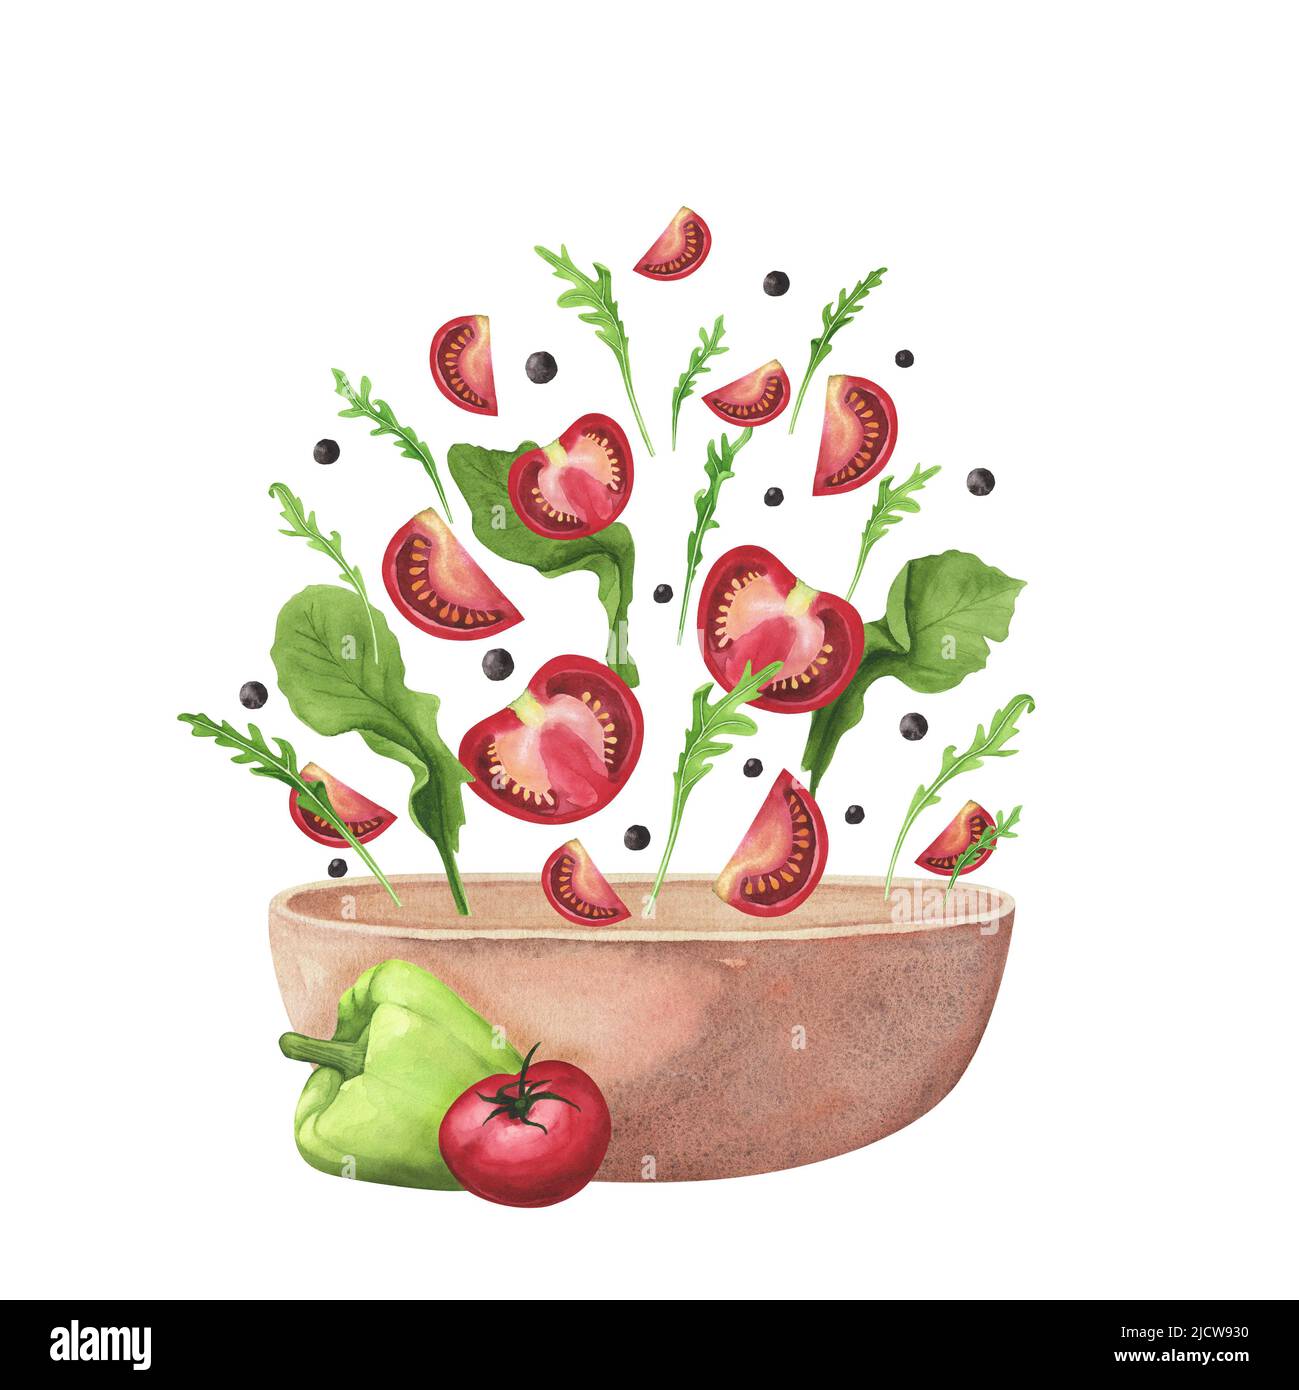 Frischen Spritzer Sommer Gemüsesalat Rucola, Tomaten, Brunnenkresse Rucola, Tomaten, Brunnenkresse, In roter Keramik-Schüssel Topf auf weißem Hintergrund. Watercol Stockfoto